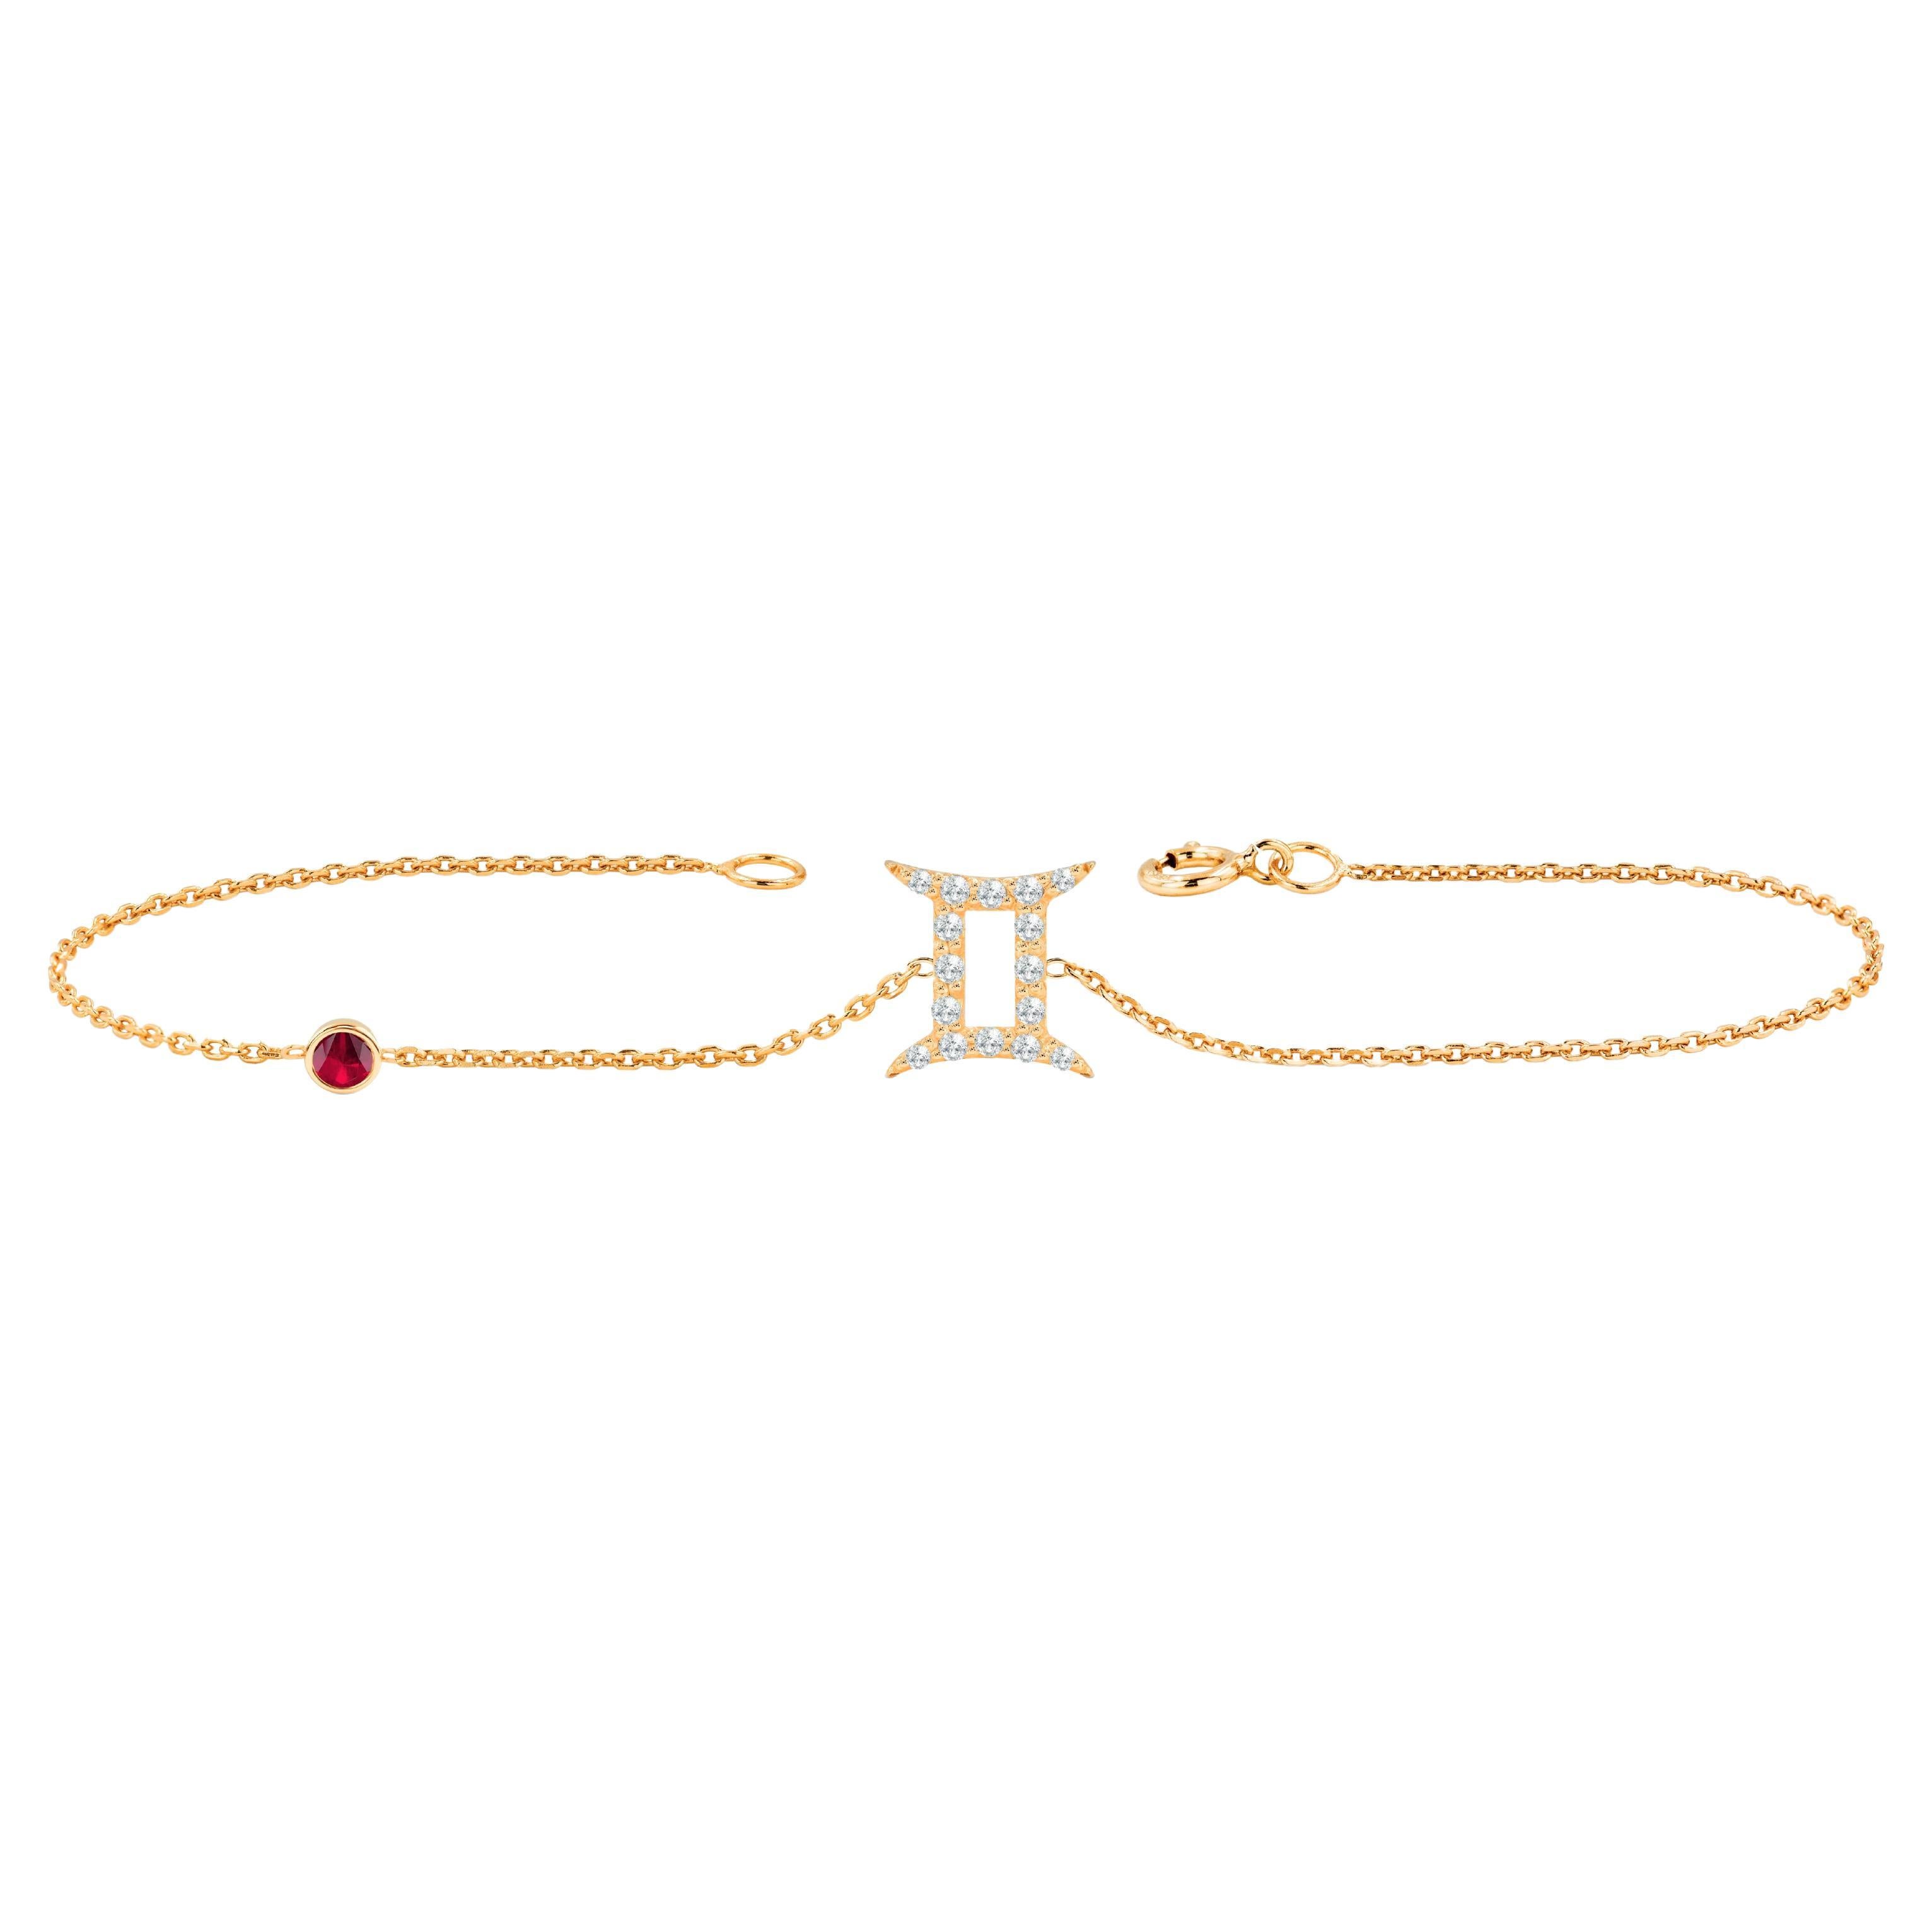 Bracelet signe du zodiaque des gemmes en or 18 carats avec pierre de naissance, rubis, émeraude et saphir